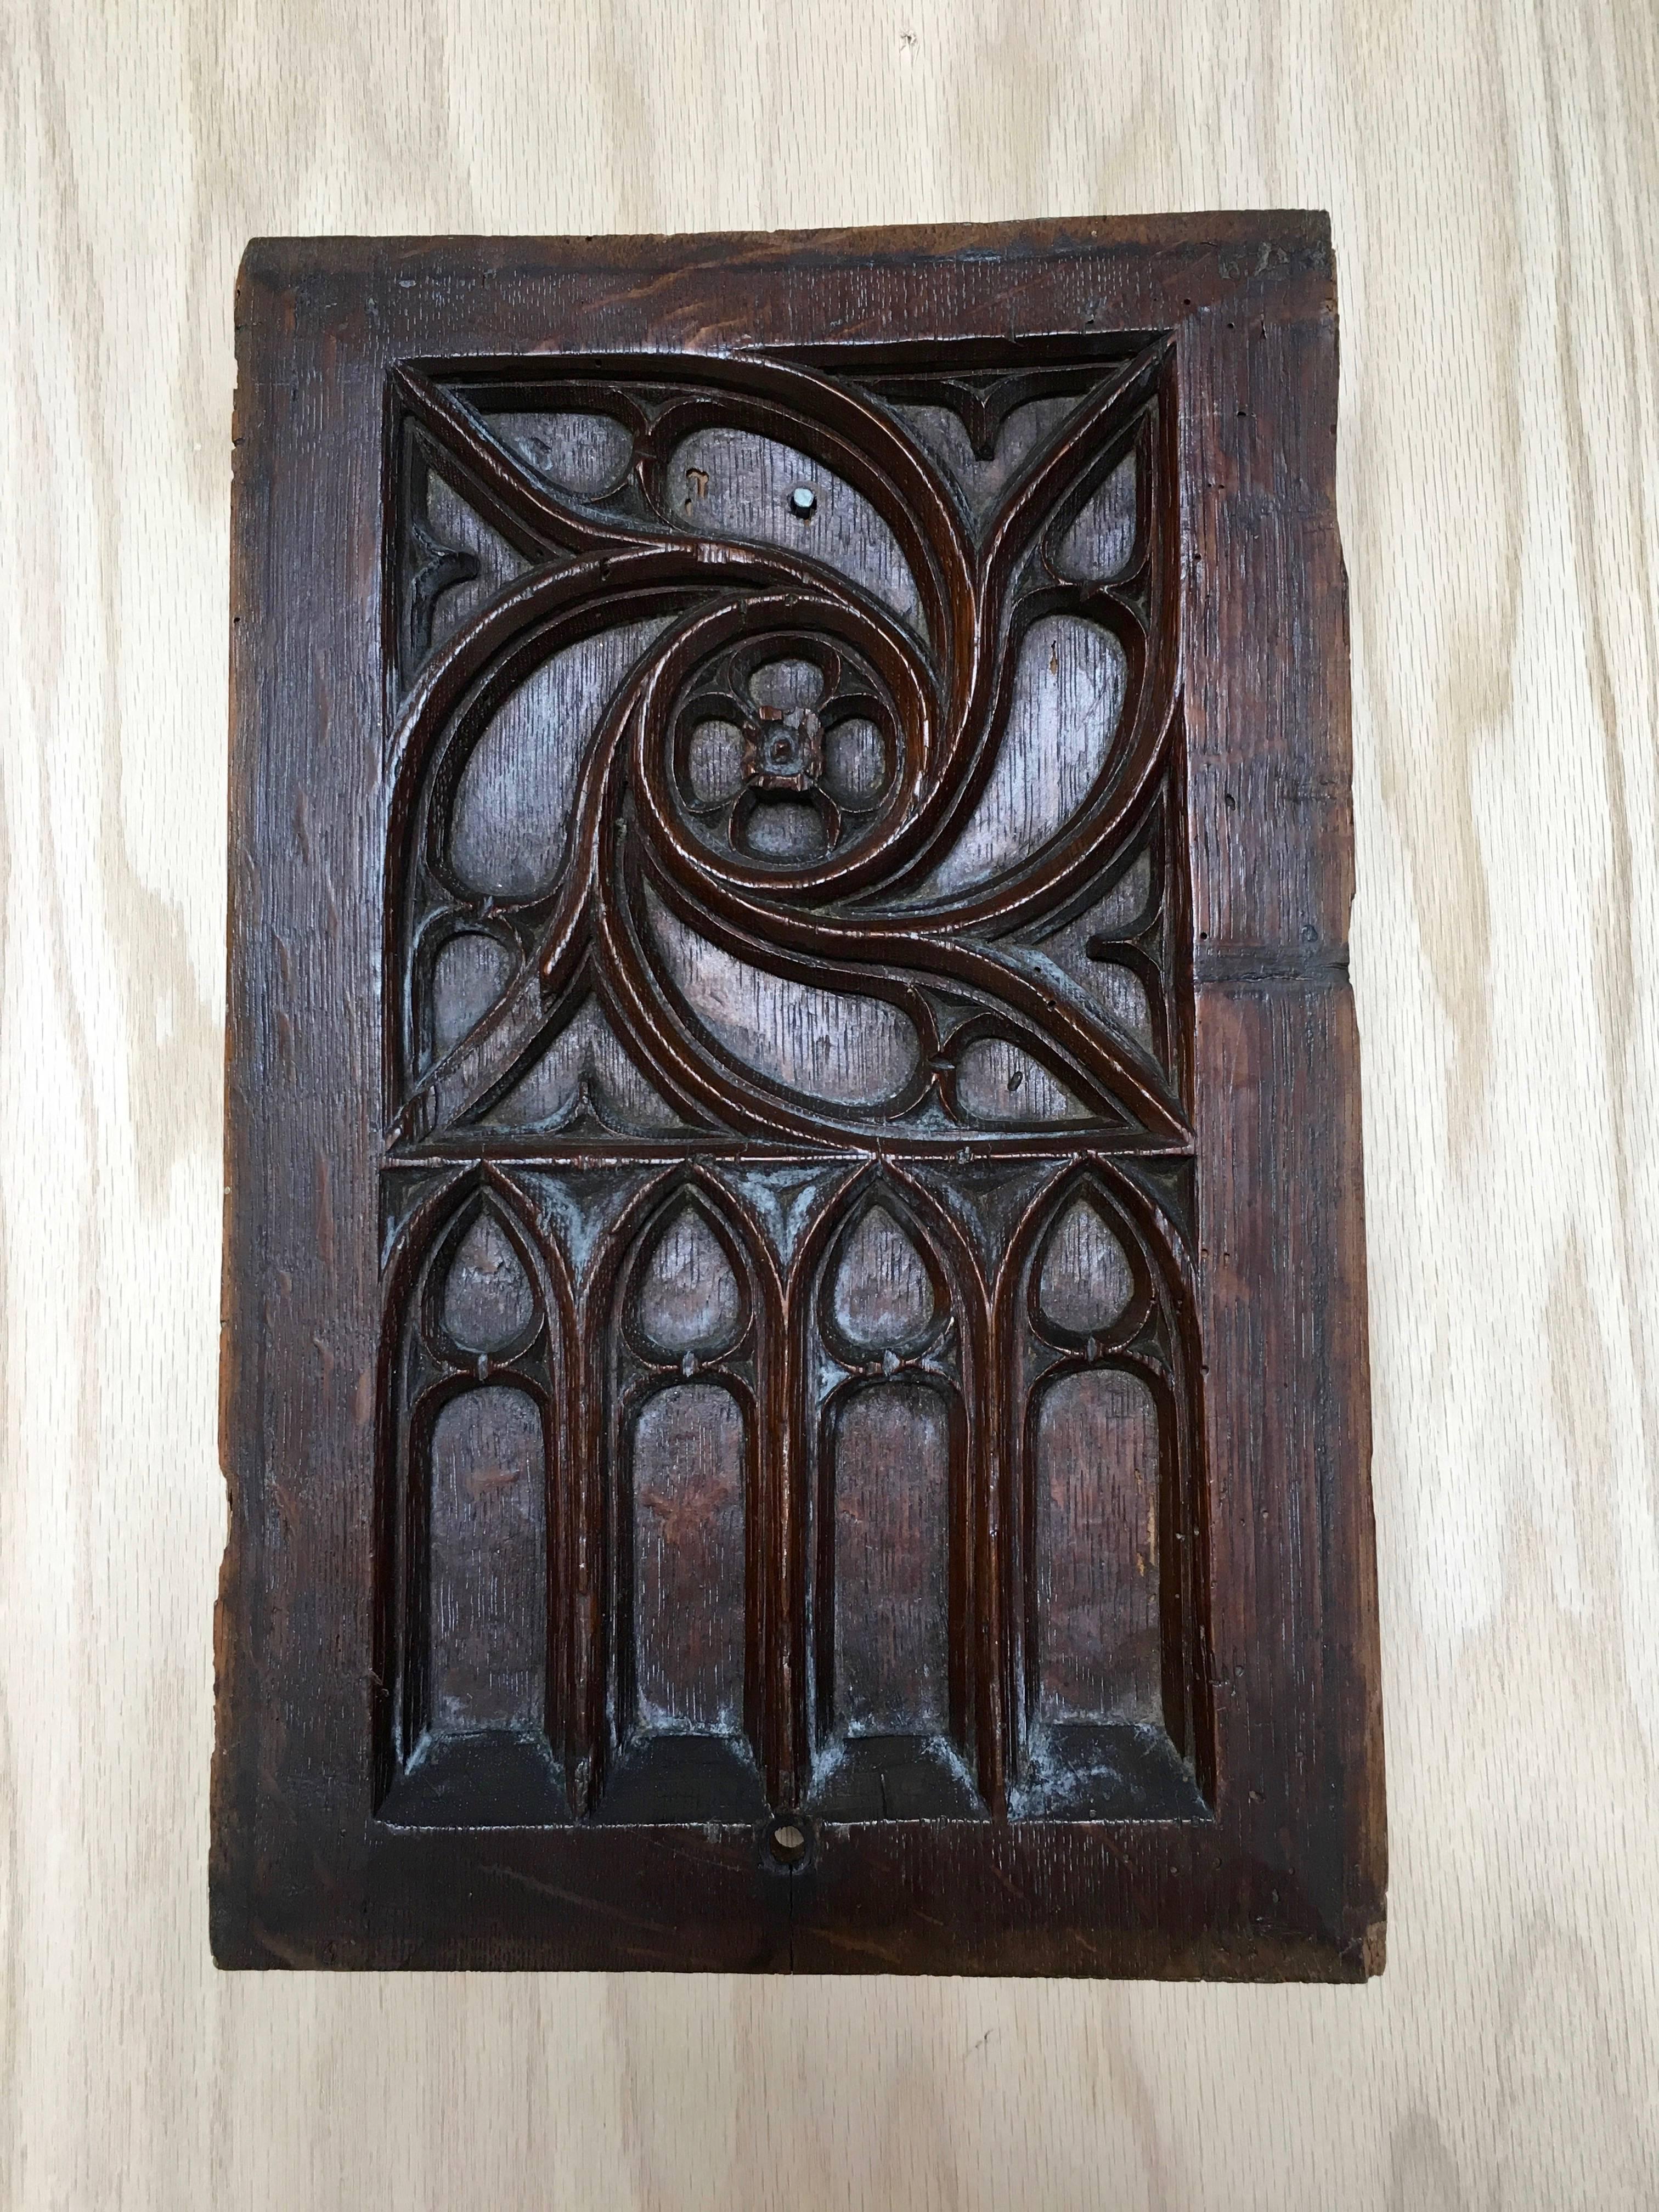 Antique 19th century Gothic Revival decorative panel.